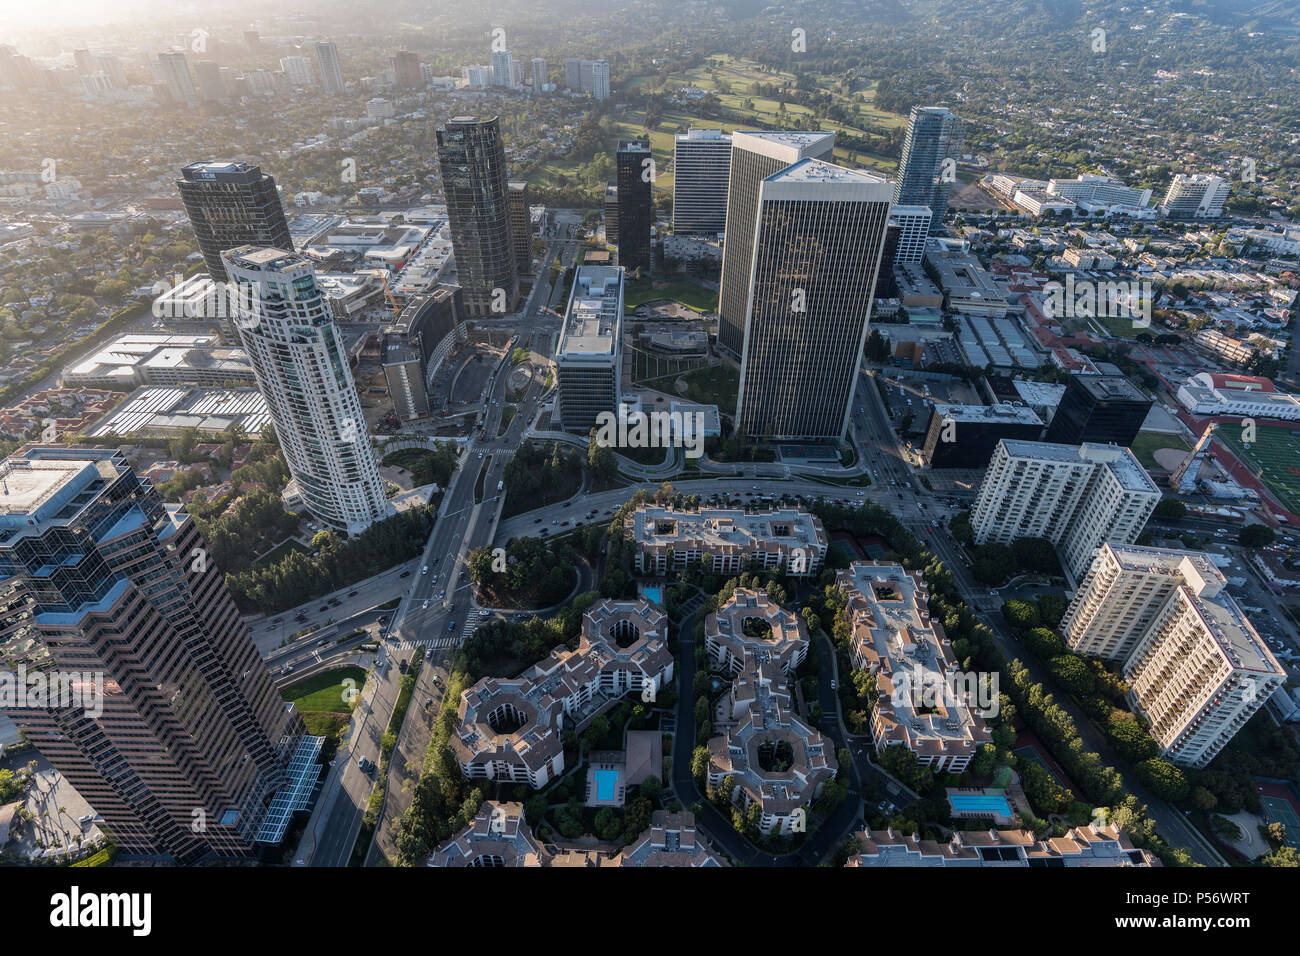 Los Angeles, California, EE.UU. - El 18 de abril, 2018: Vista aérea de la ciudad de Siglos torres de oficinas, edificios de apartamentos y condominios. Foto de stock